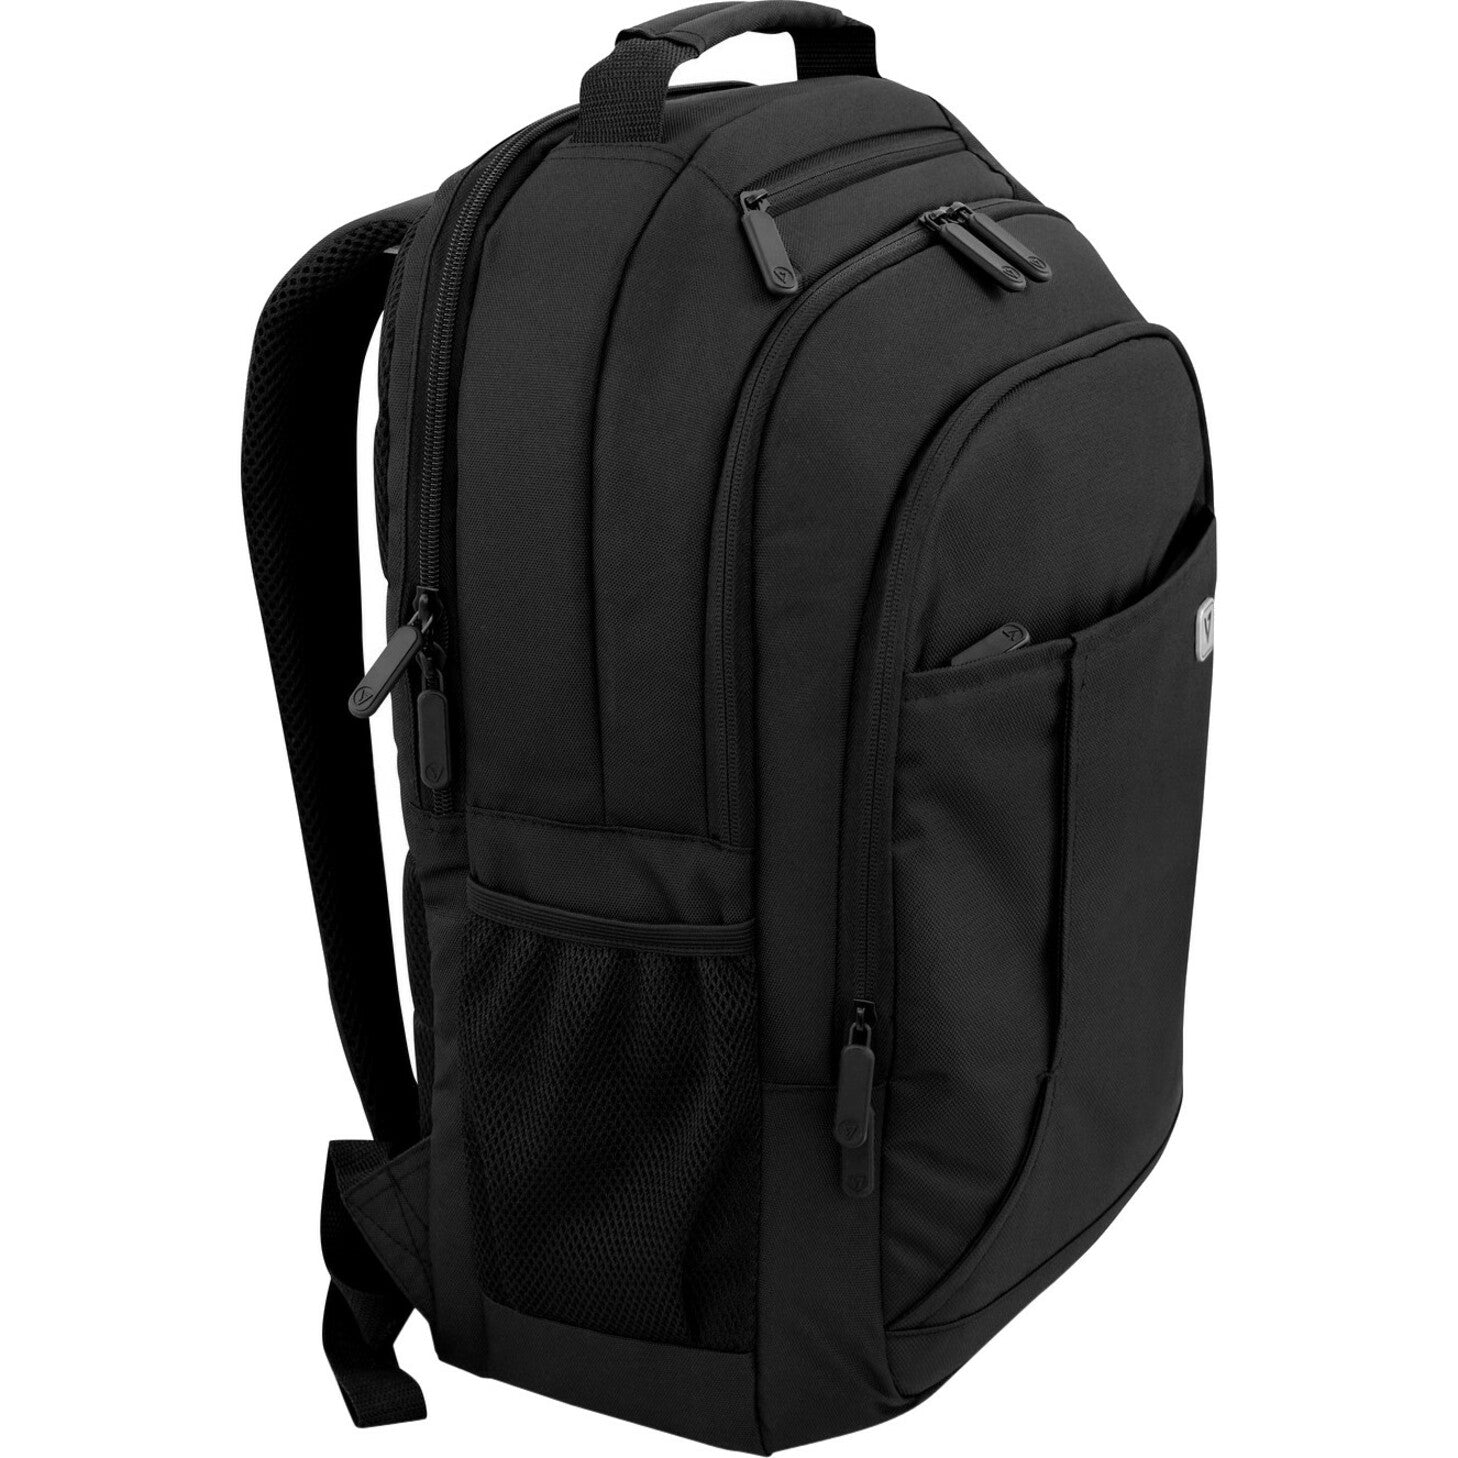 V7 Professional 16" Laptop Backpack - Black [Discontinued]